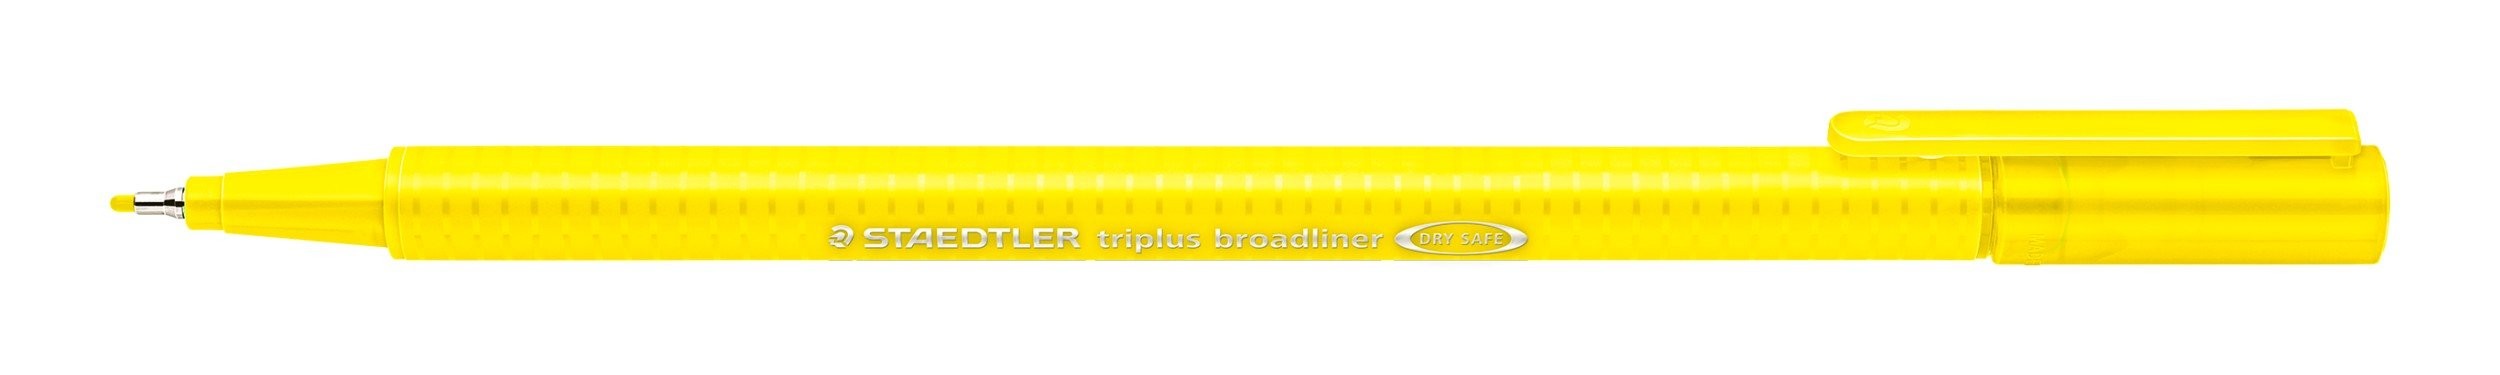 STAEDTLER triplus broadliner